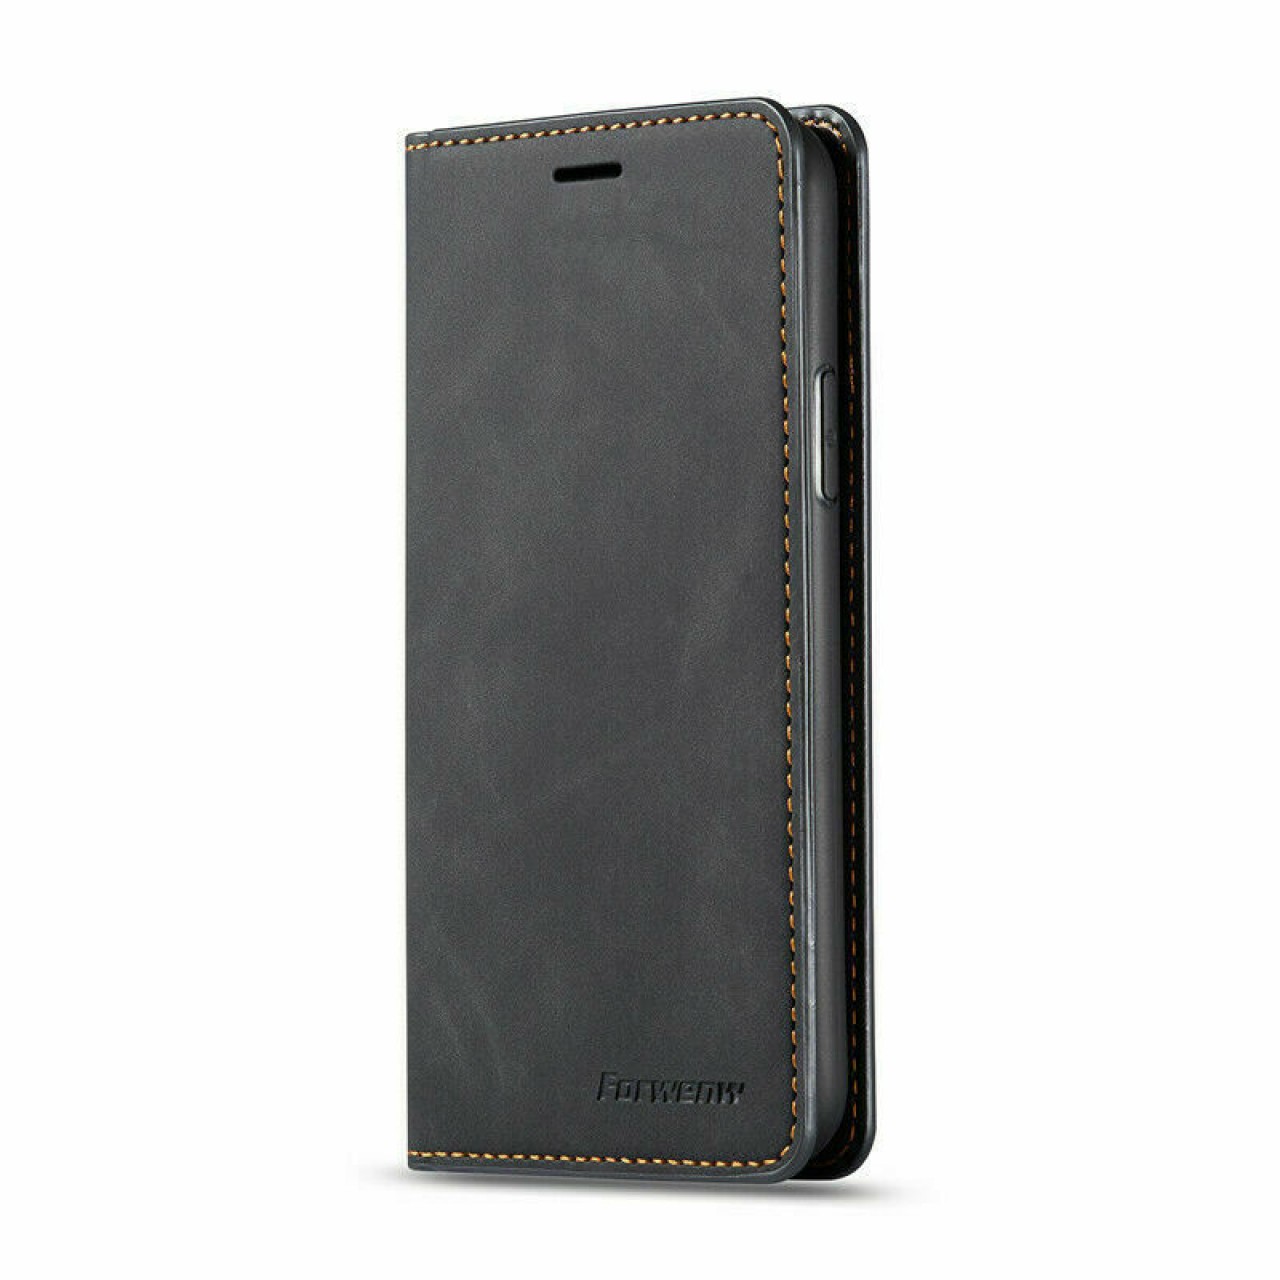 Samsung Galaxy Note 9 Θήκη Κινητού Μαγνητική - Mobile Case Leather Book Forwenw Black